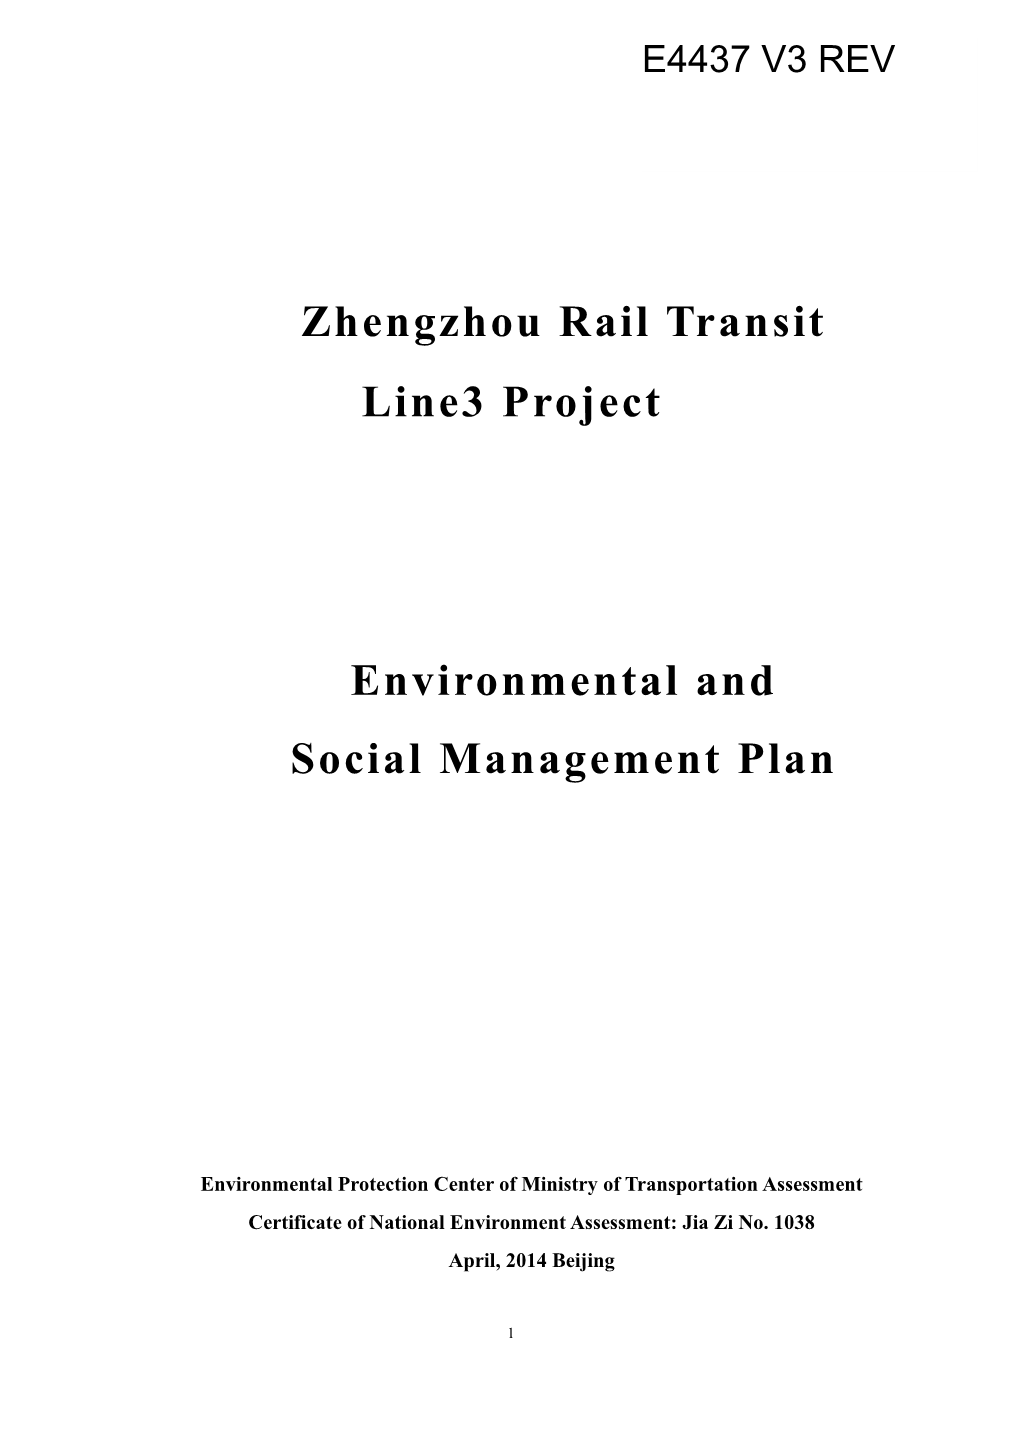 Zhengzhou Rail Transit Line3 Project